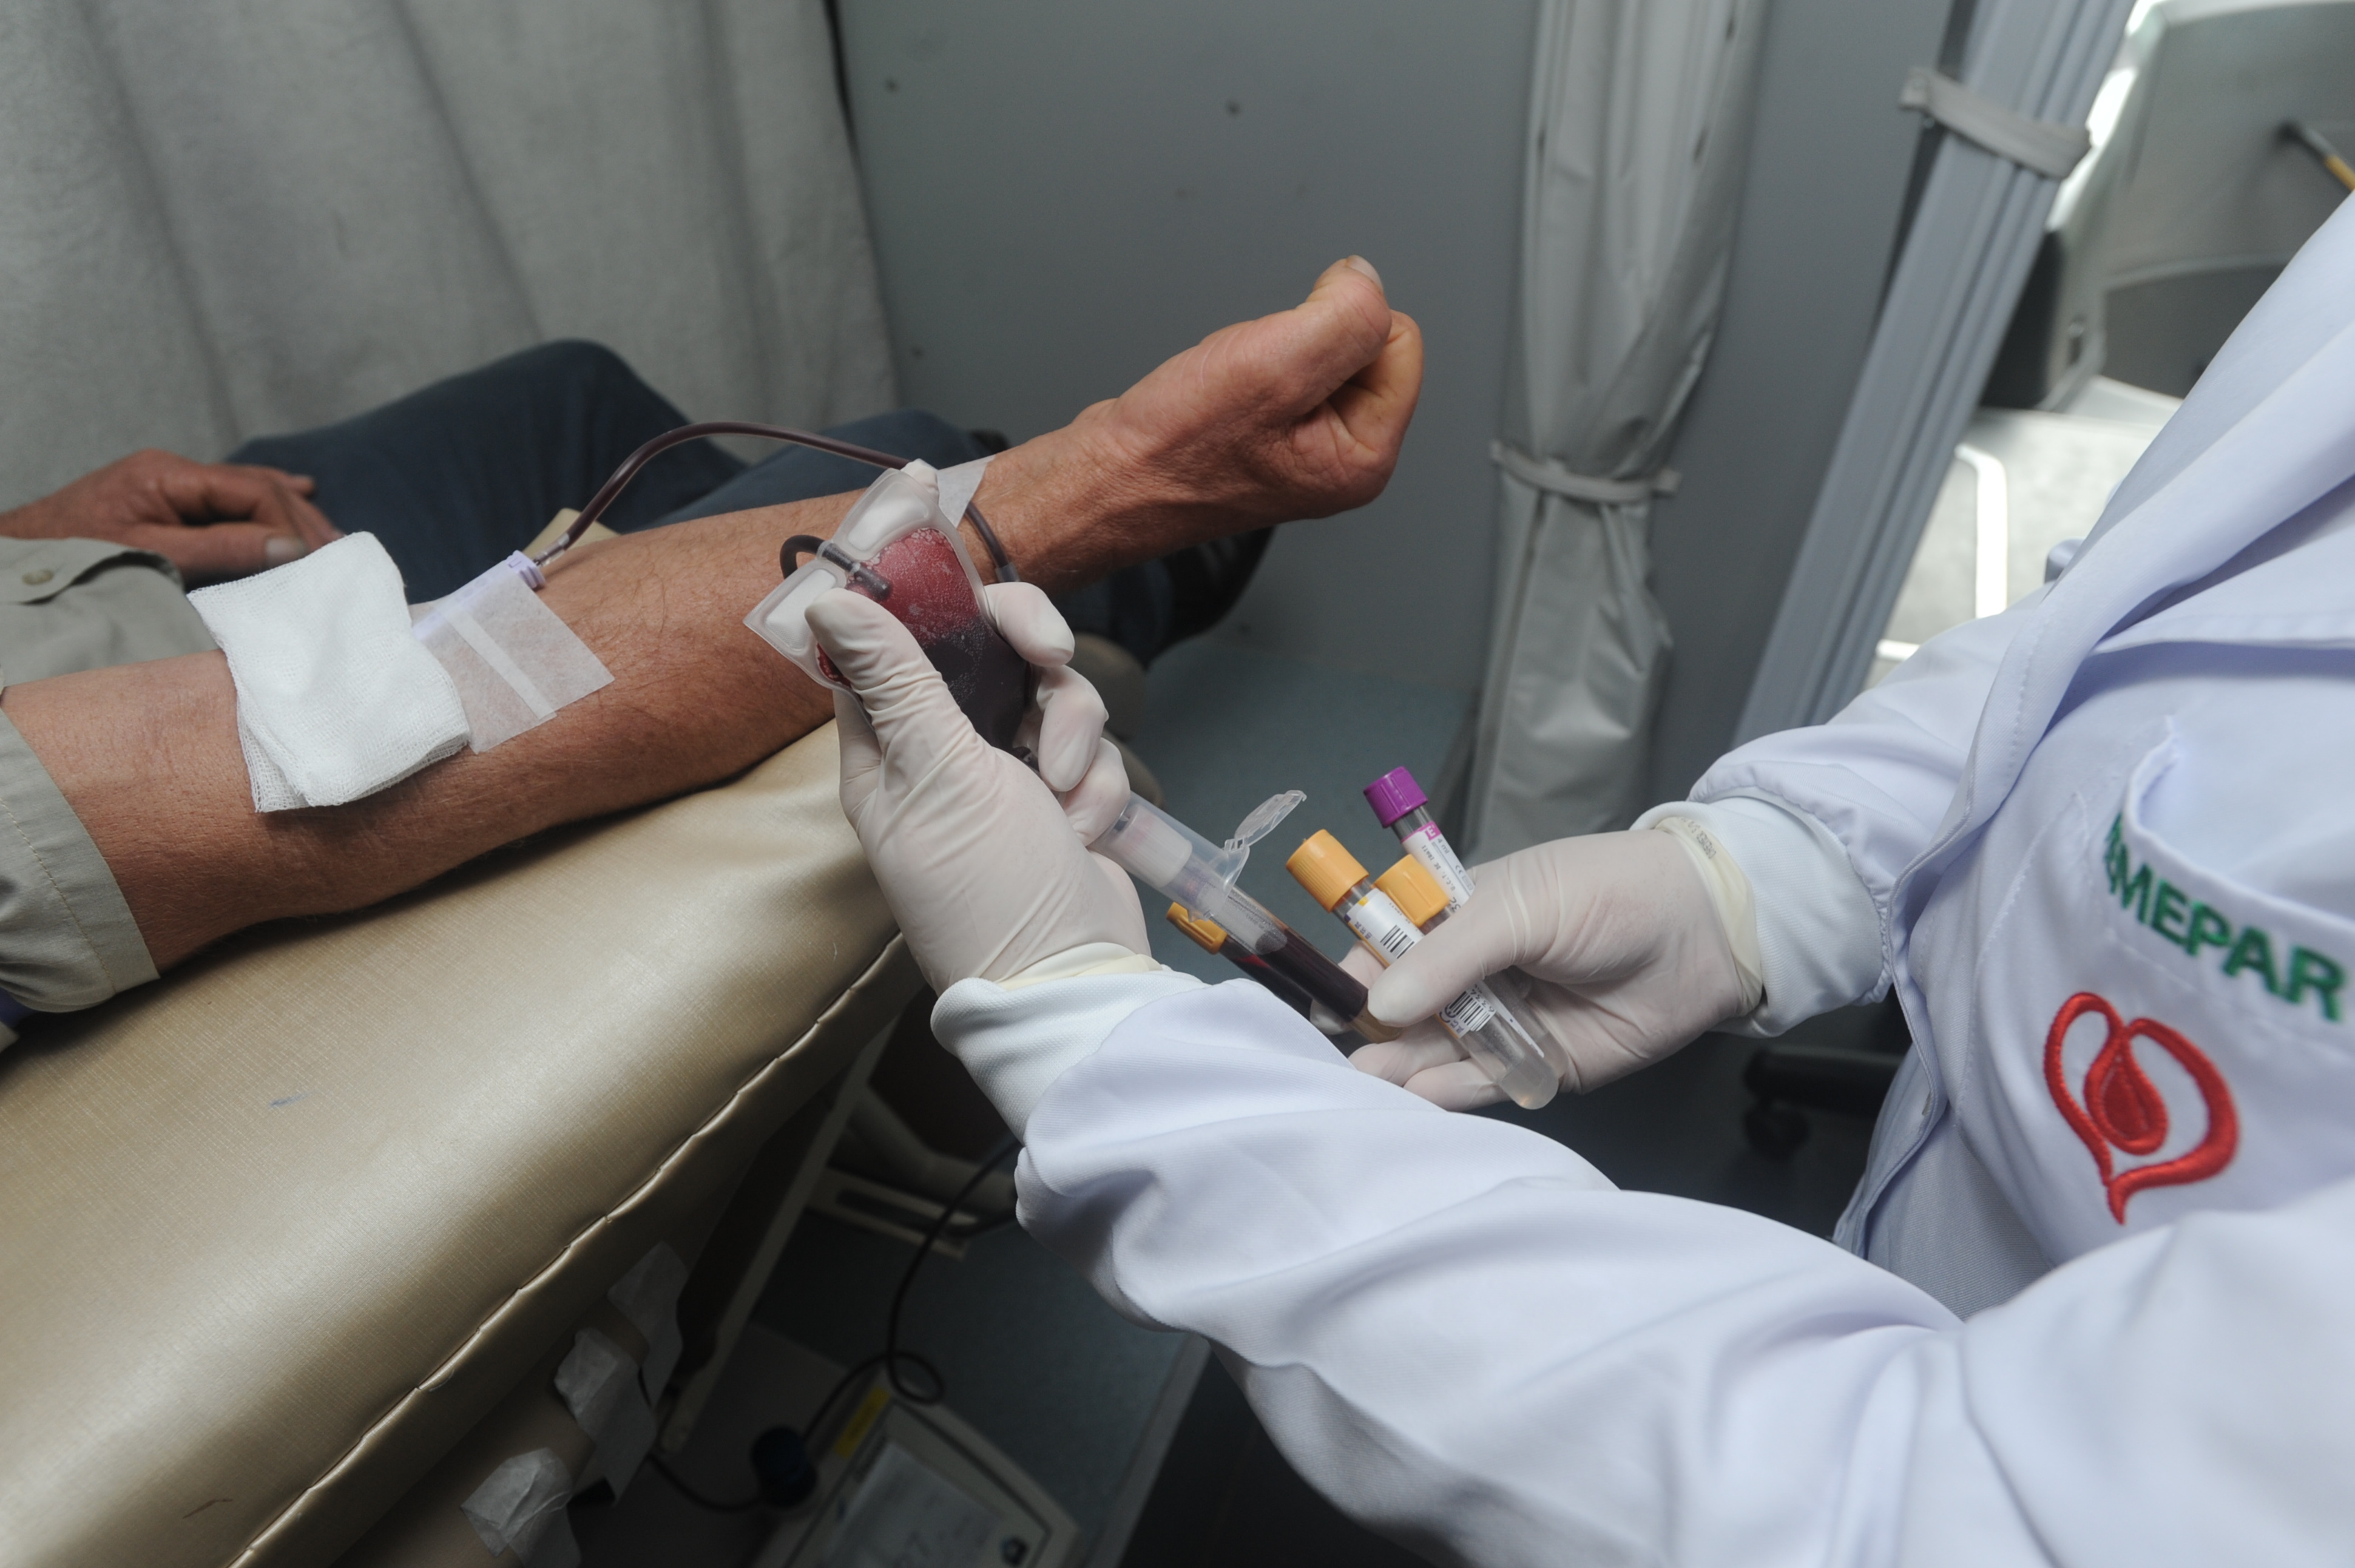  99% dos doadores de sangue dizem que voltariam a doar novamento